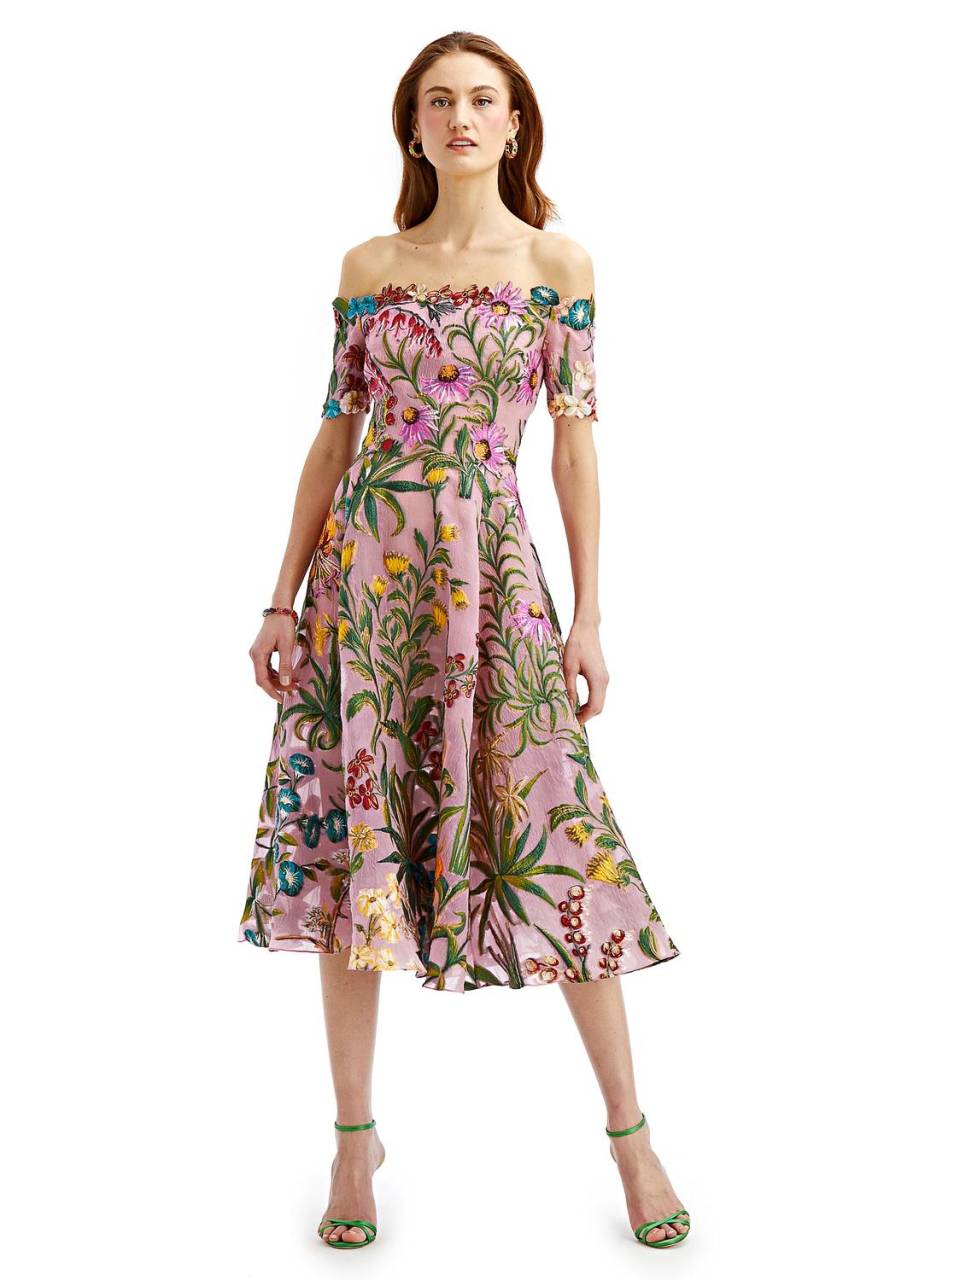 Los vestidos estilo años 50 son una tendencia, en especial en estampados florales.